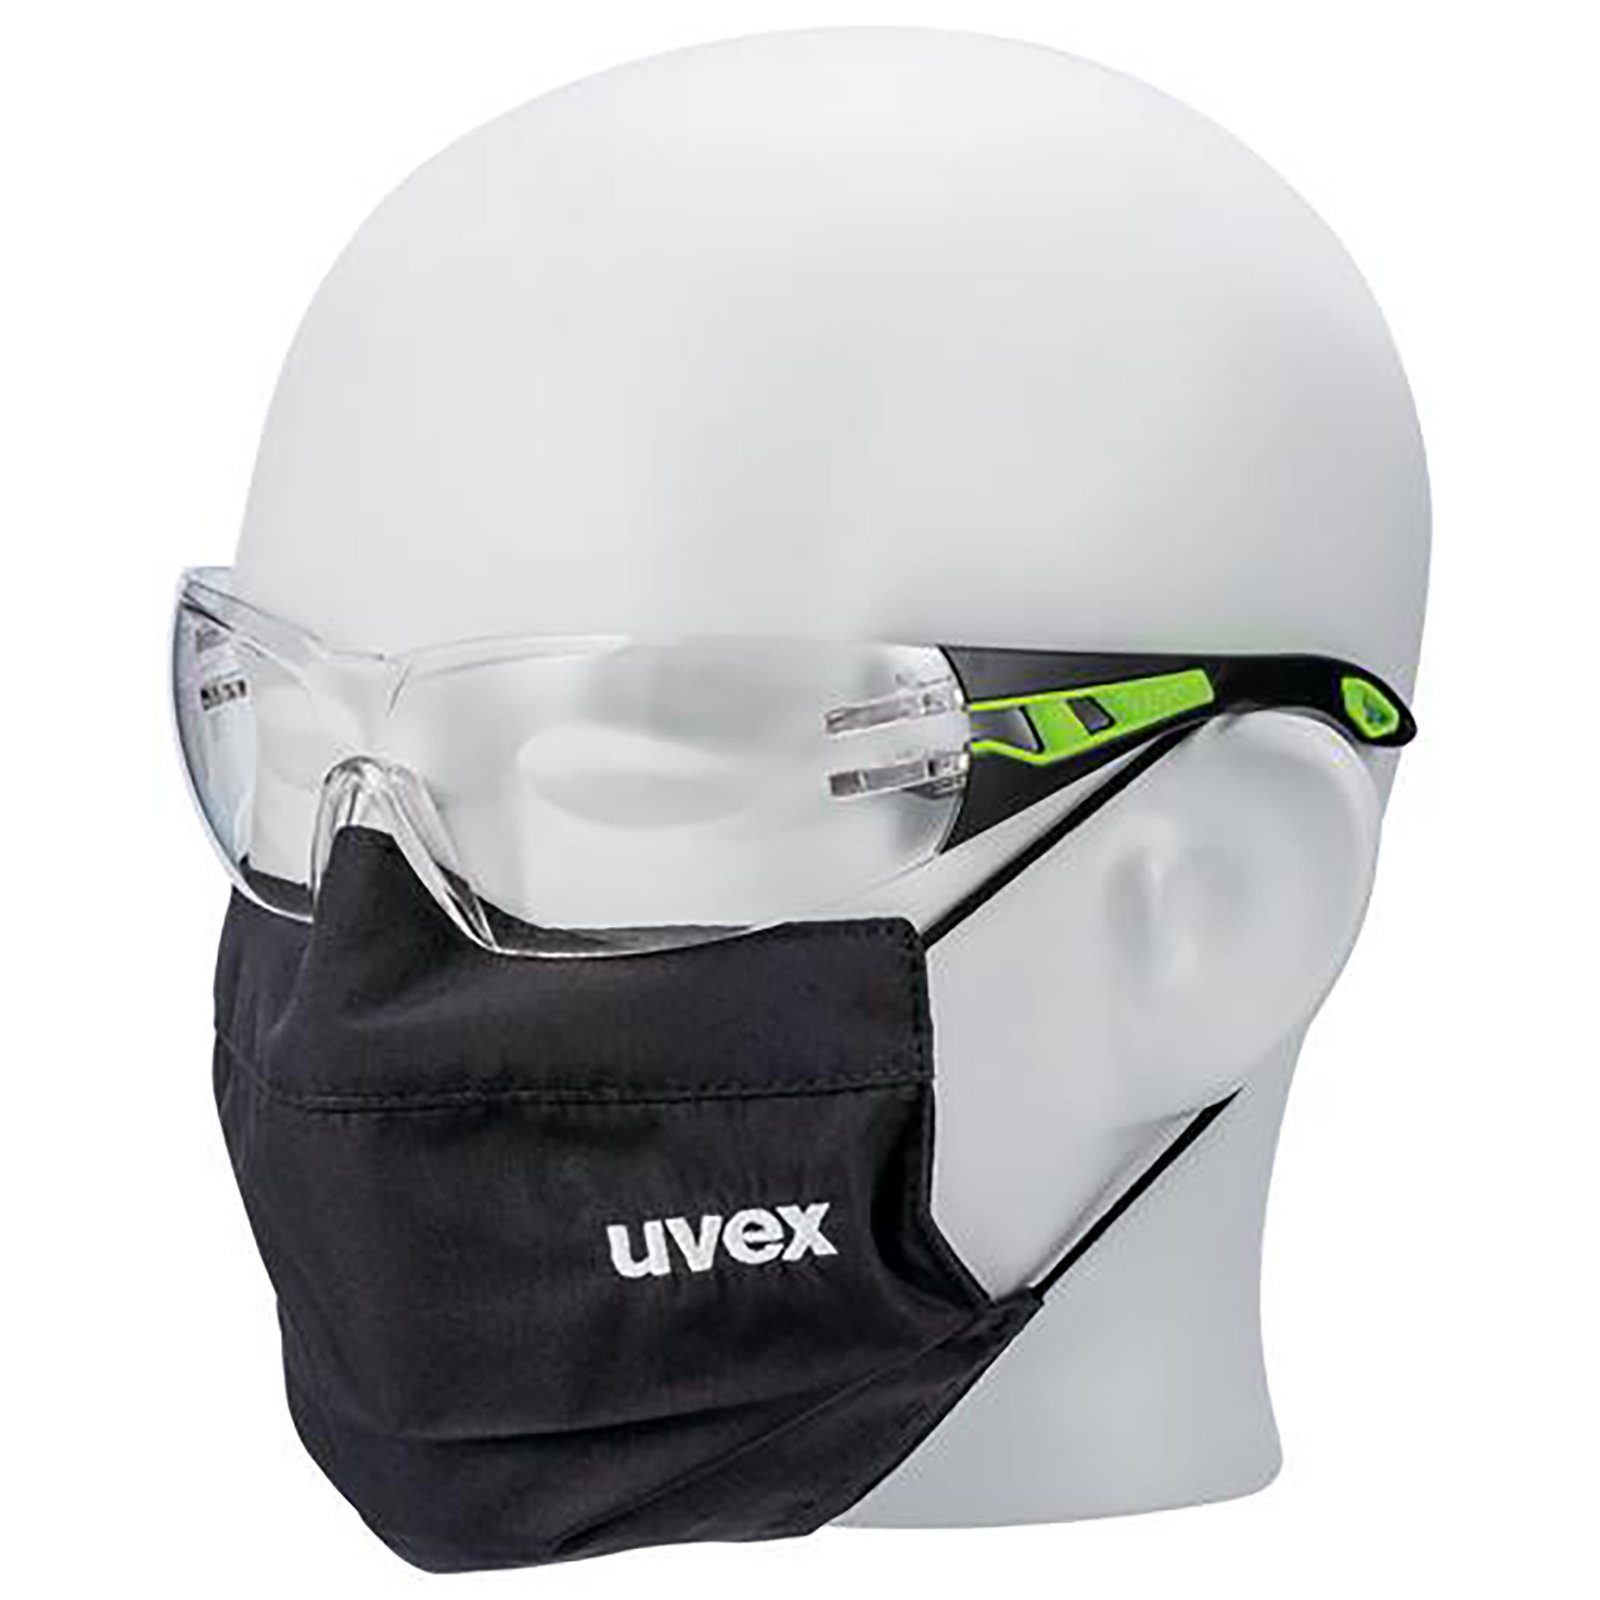 Uvex Arbeitsschutzbrille Bügelbrille pheos sv exc. 9192900